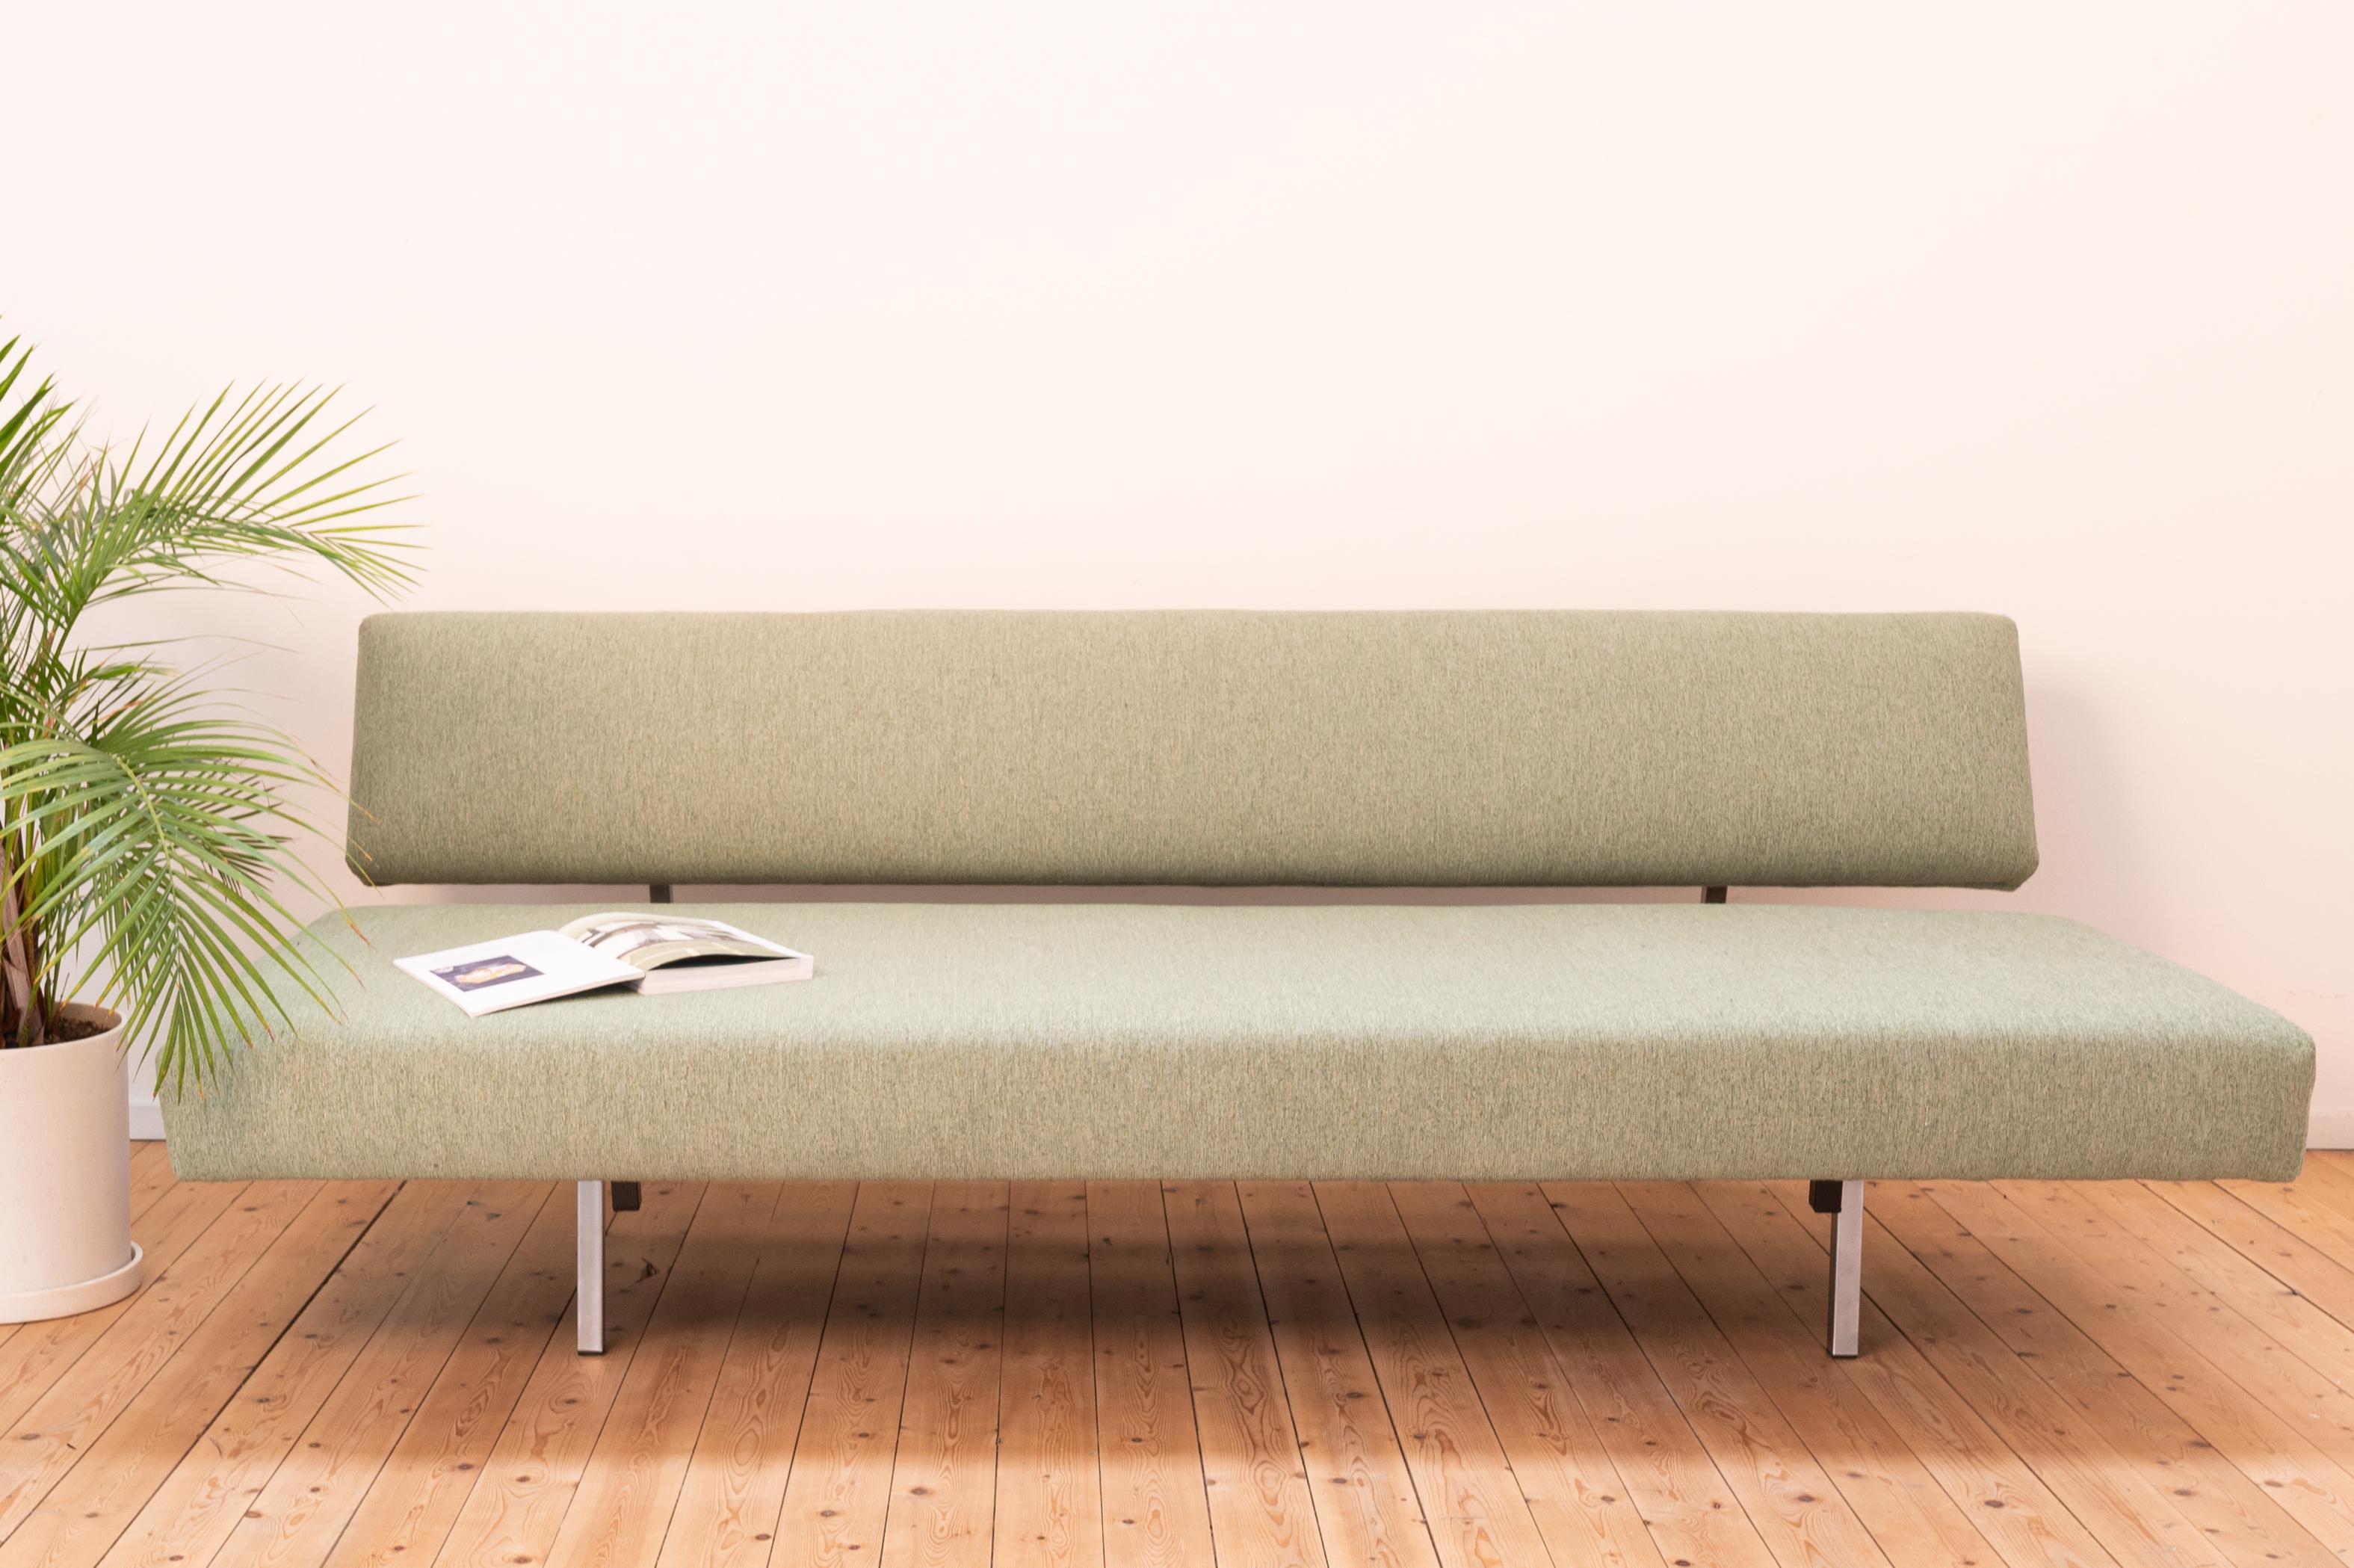 Das ikonische Sofa BR 02 von Martin Visser für Spectrum. Dieses Mid-Century Modern Schlafsofa wurde von uns aufgearbeitet und erhielt einen neuen hellgrünen Qualitätsbezug. Die Sitzfläche und die Rückenlehne werden von einem silbernen Metallrahmen